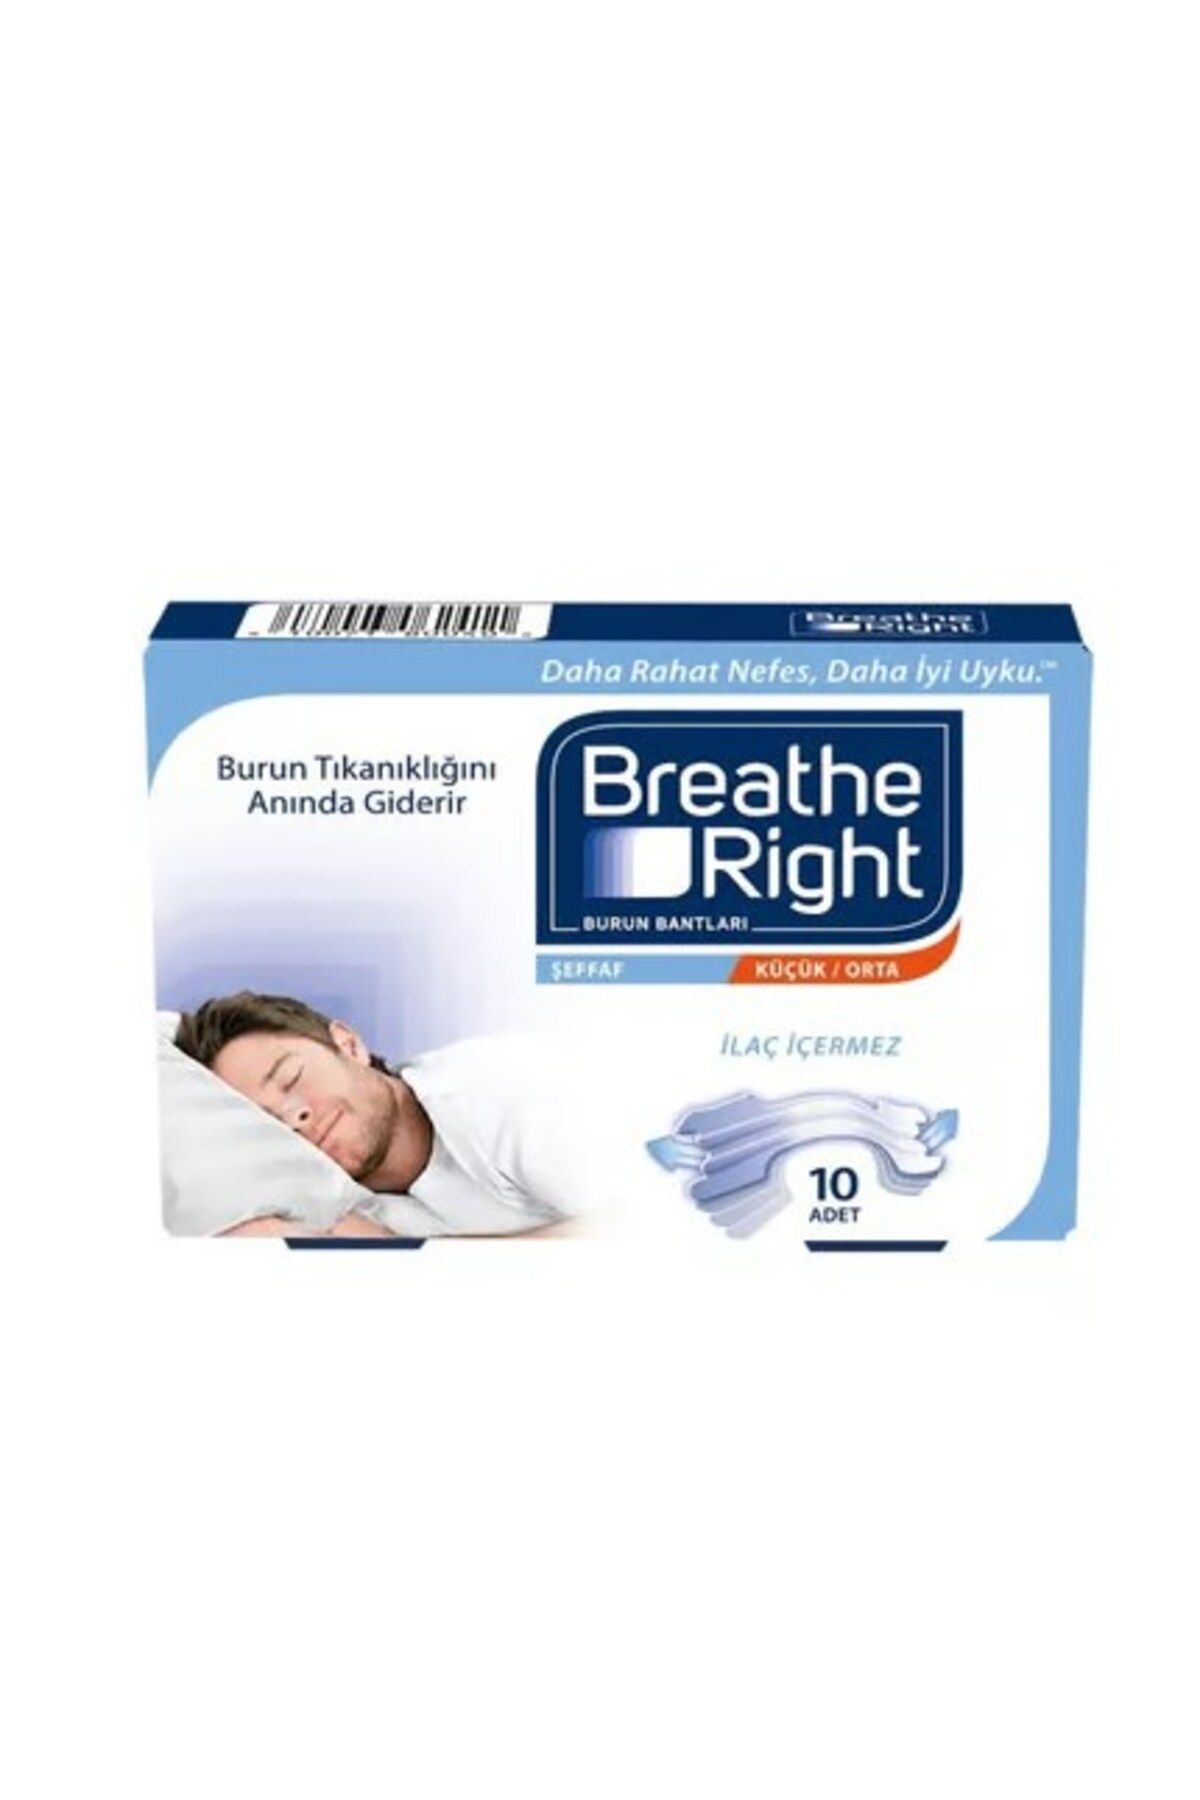 Breathe Right Şeffaf Küçük/orta Burun Bandı 10'lu 810071800405